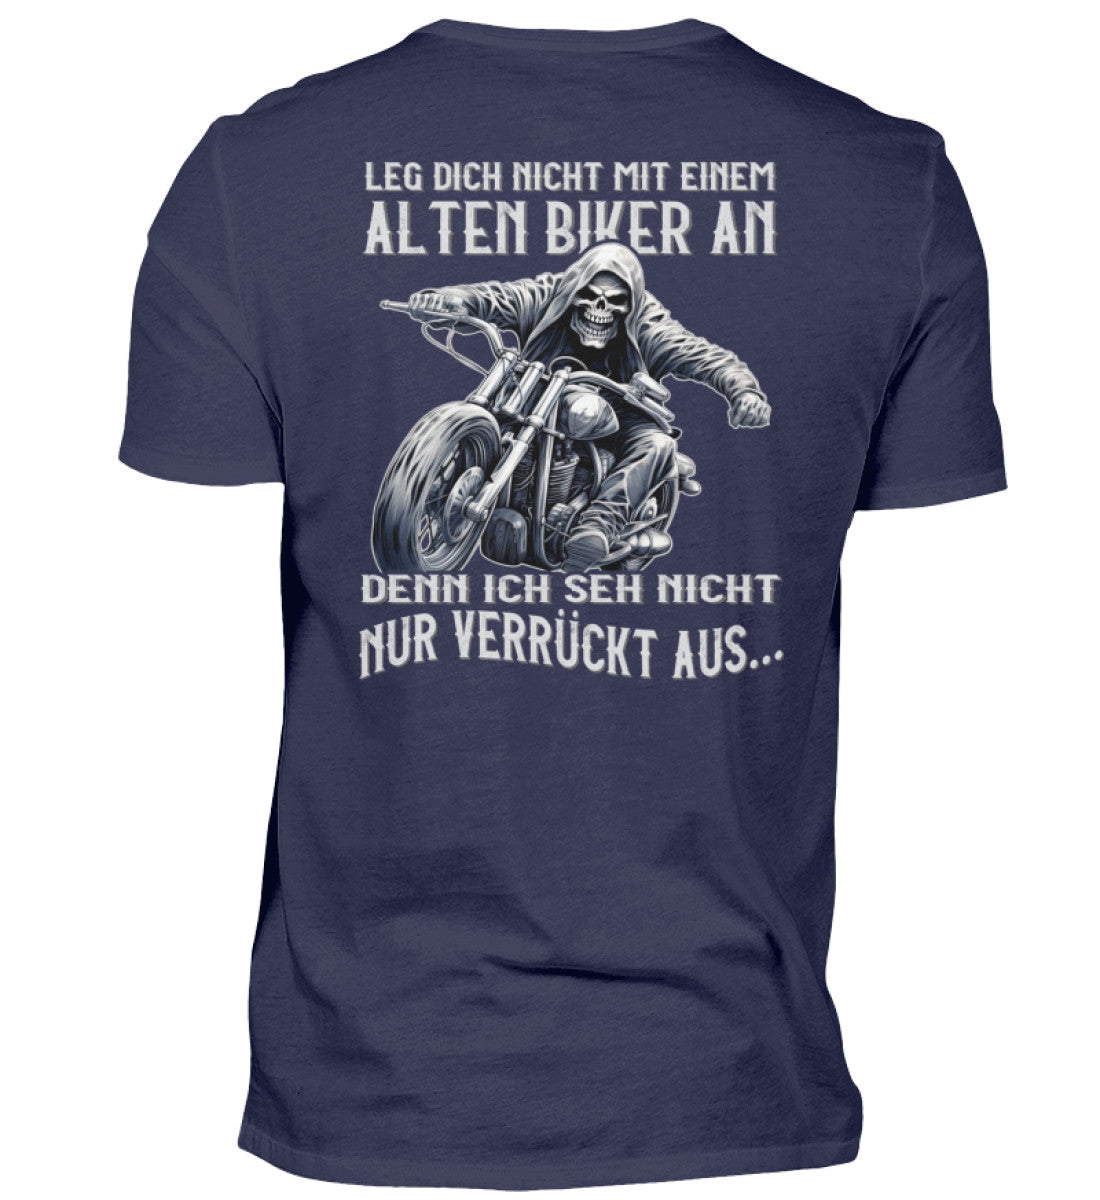 Ein Biker T-Shirt für Motorradfahrer von Wingbikers mit dem Aufdruck, Leg dich nicht mit einem alten Biker an, denn ich seh nicht nur verrückt aus, als Back Print - in navy blau.